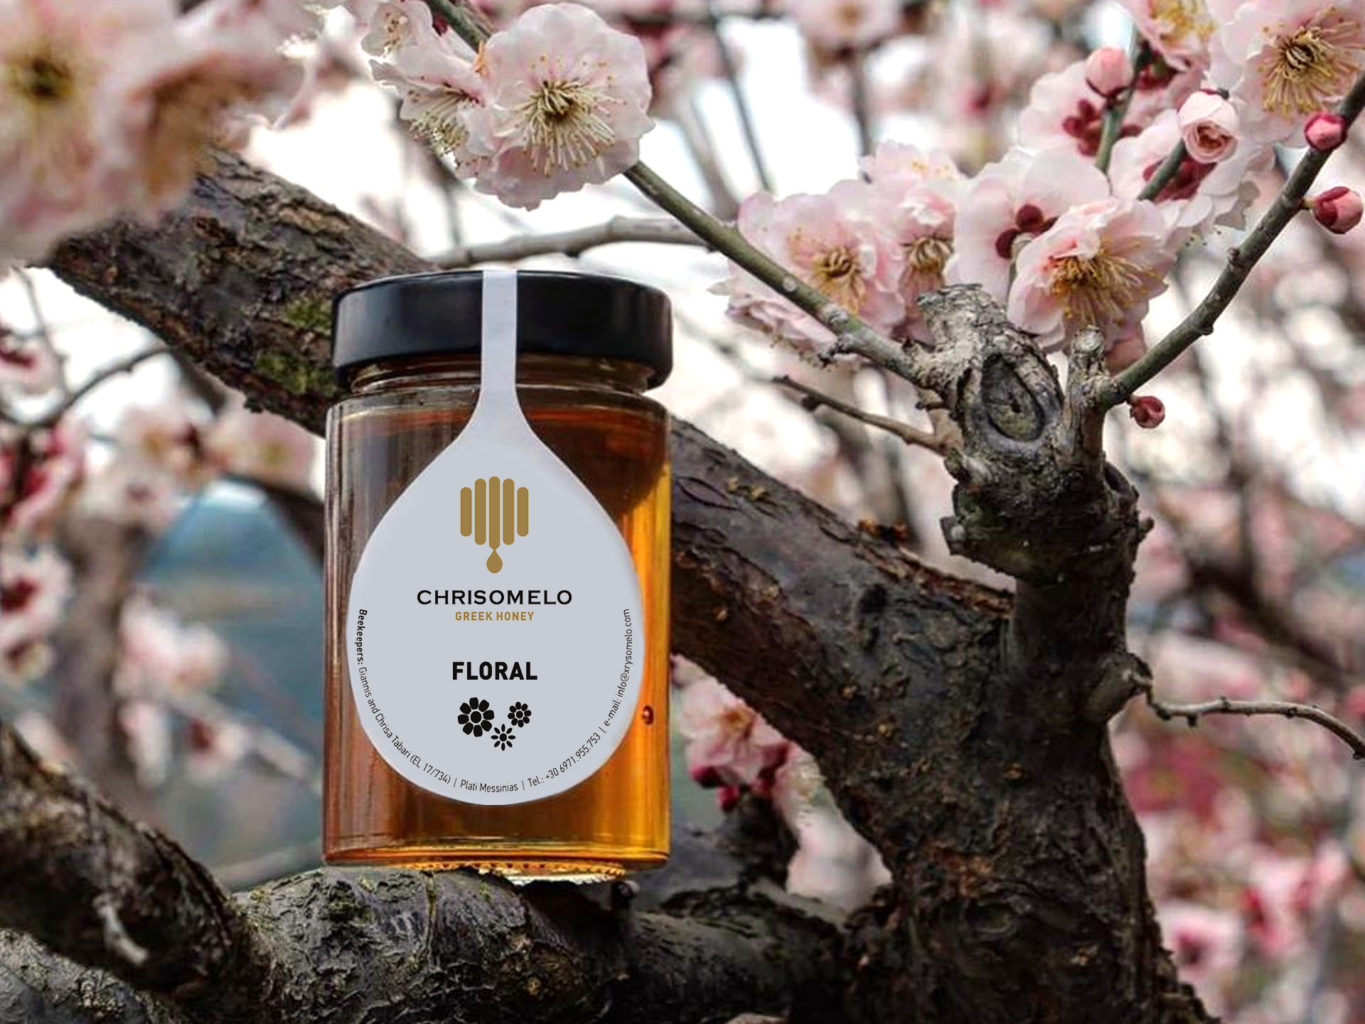 Chrisomelo honey packaging